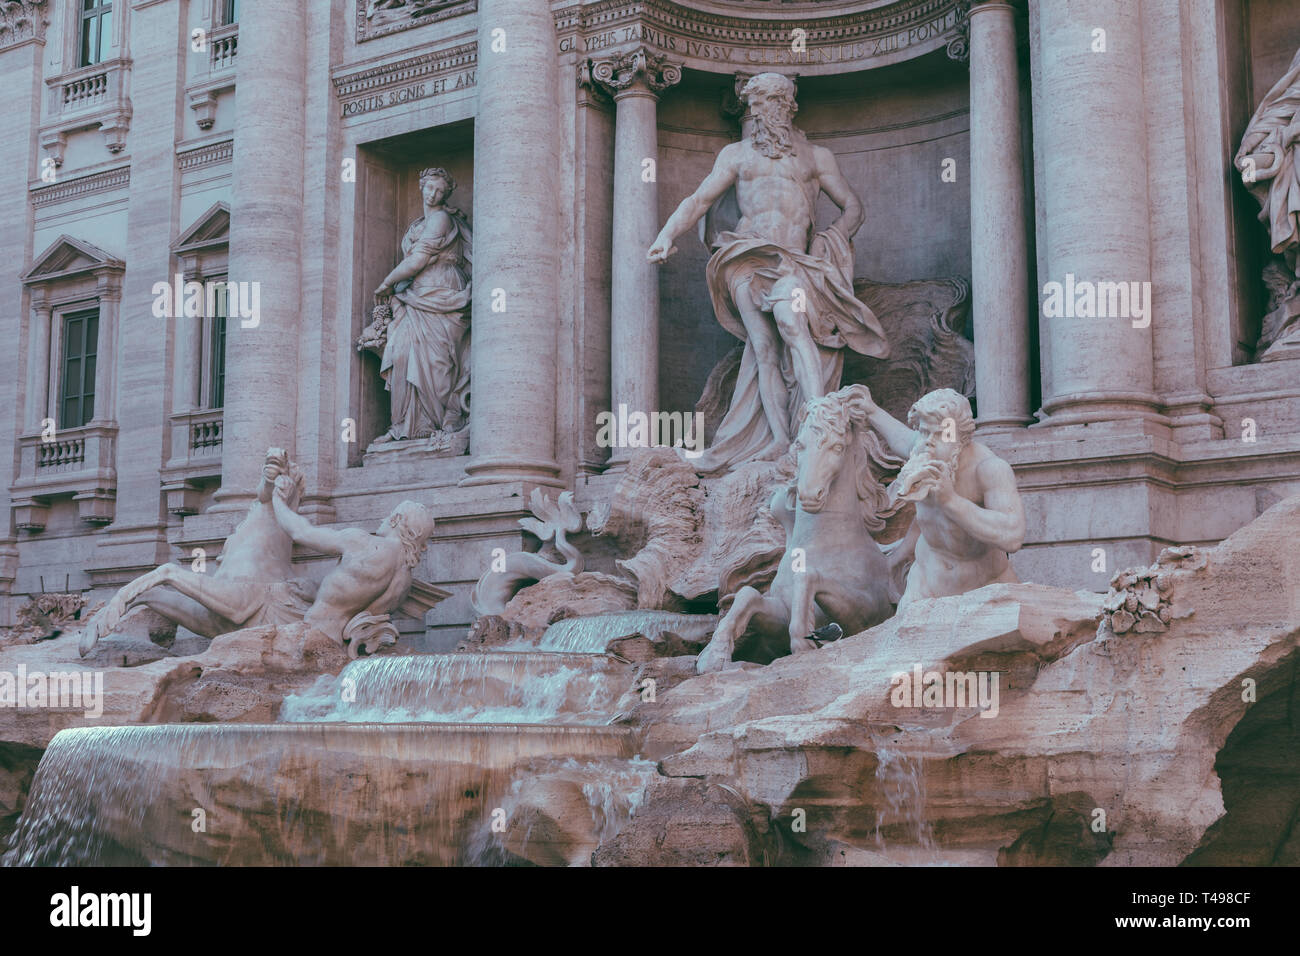 Vue panoramique sur la Fontaine de Trevi dans le quartier de Trevi à Rome, Italie. Il conçu par l'architecte italien Nicola Salvi et achevé par Giuseppe Pannini Banque D'Images